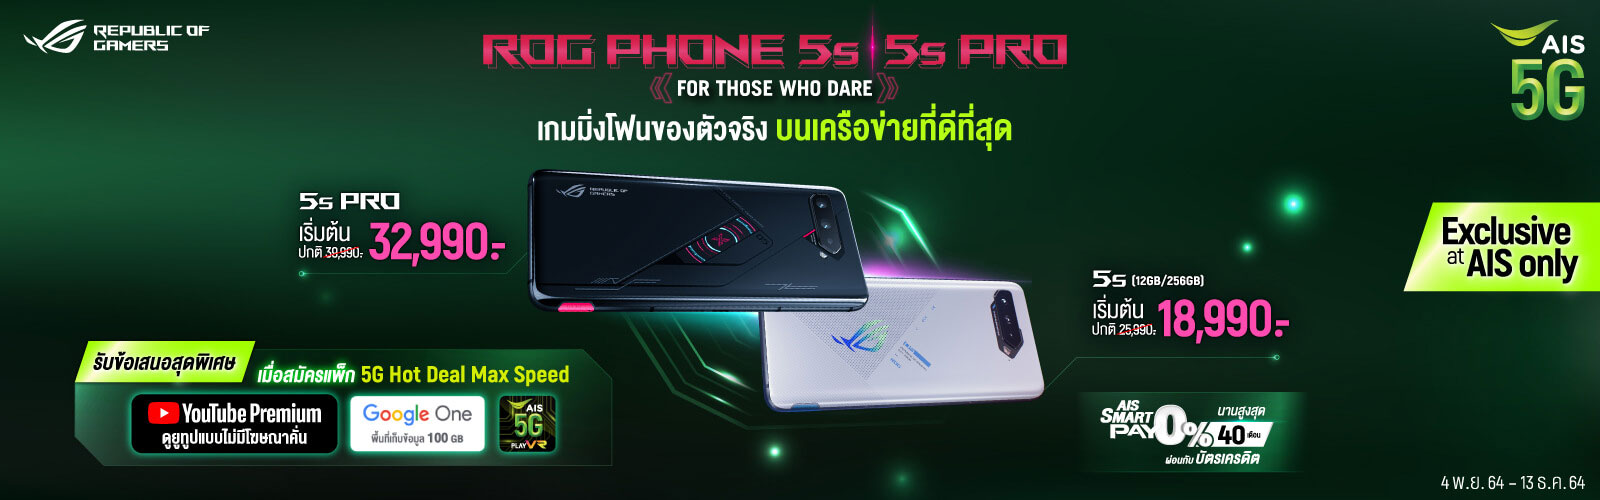 ROG Phone 5s 5s Pro 20211213